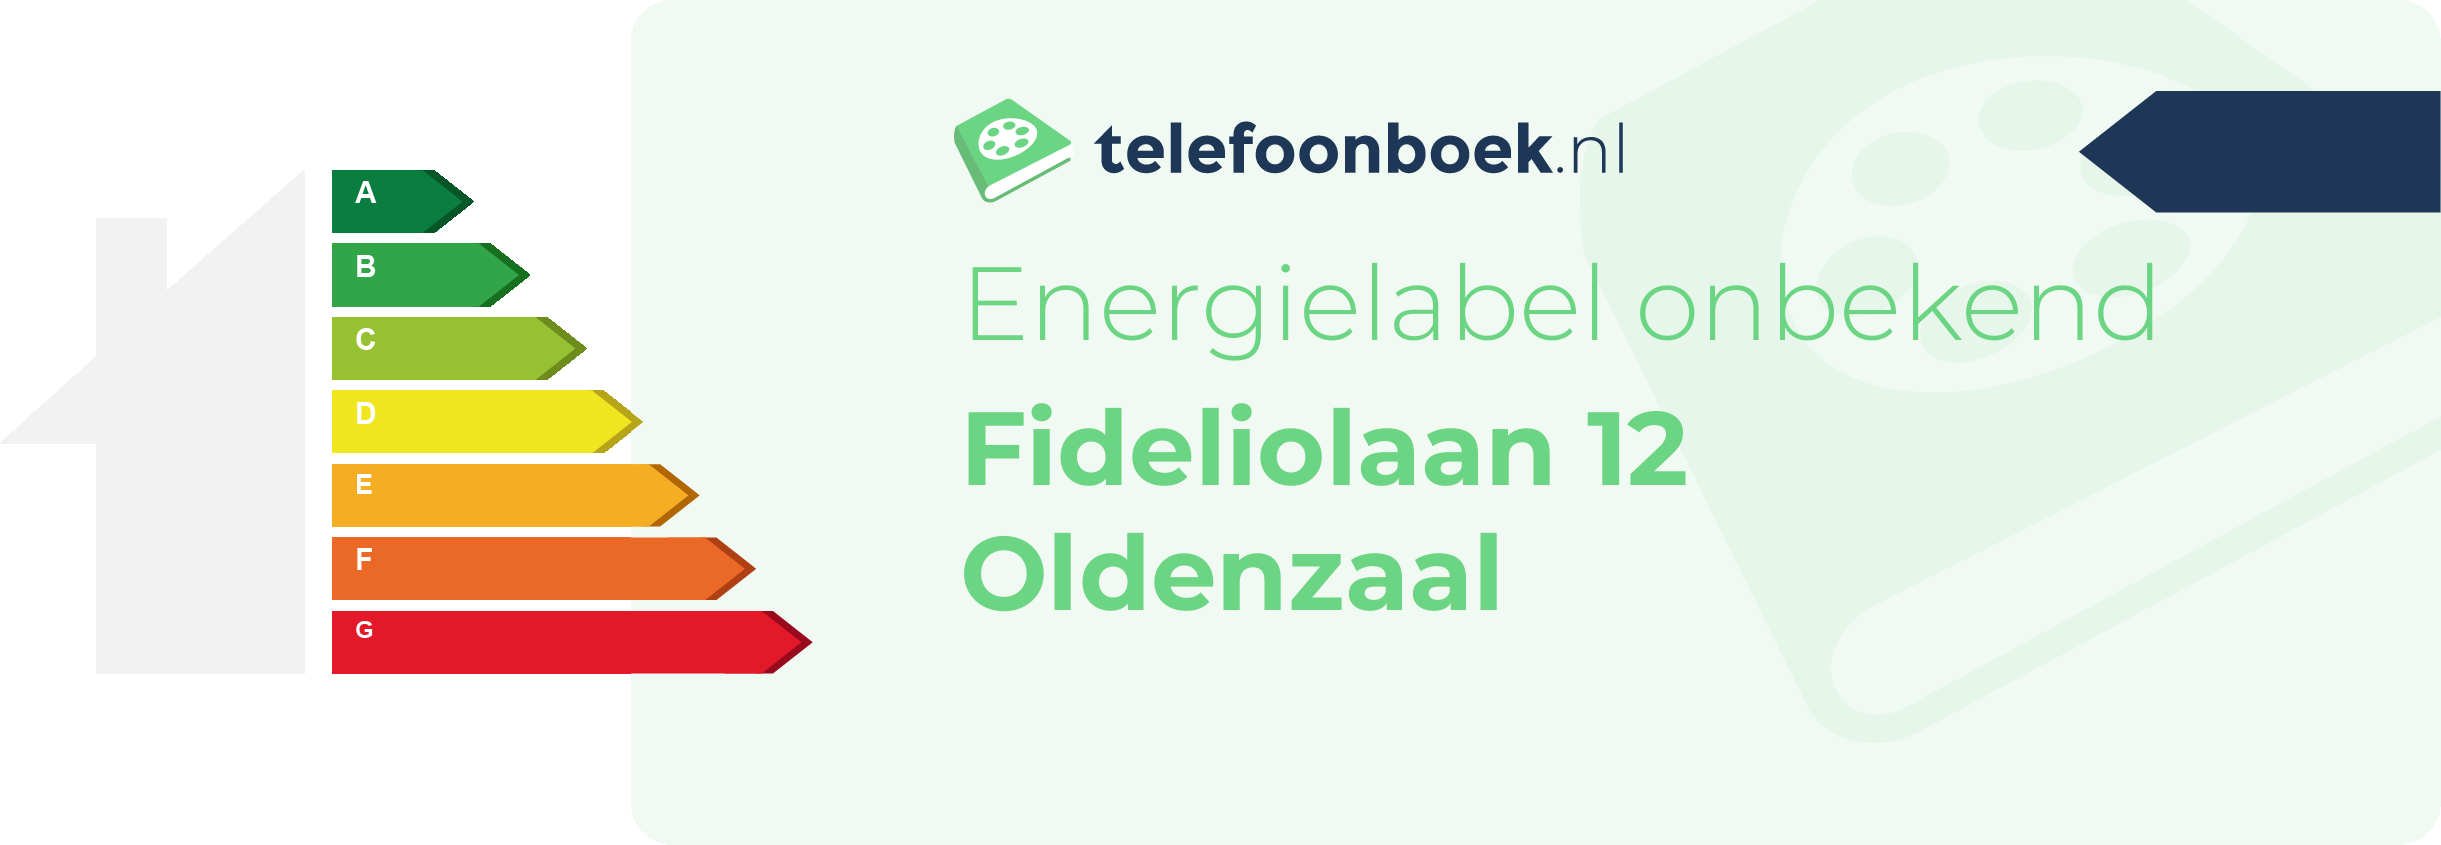 Energielabel Fideliolaan 12 Oldenzaal